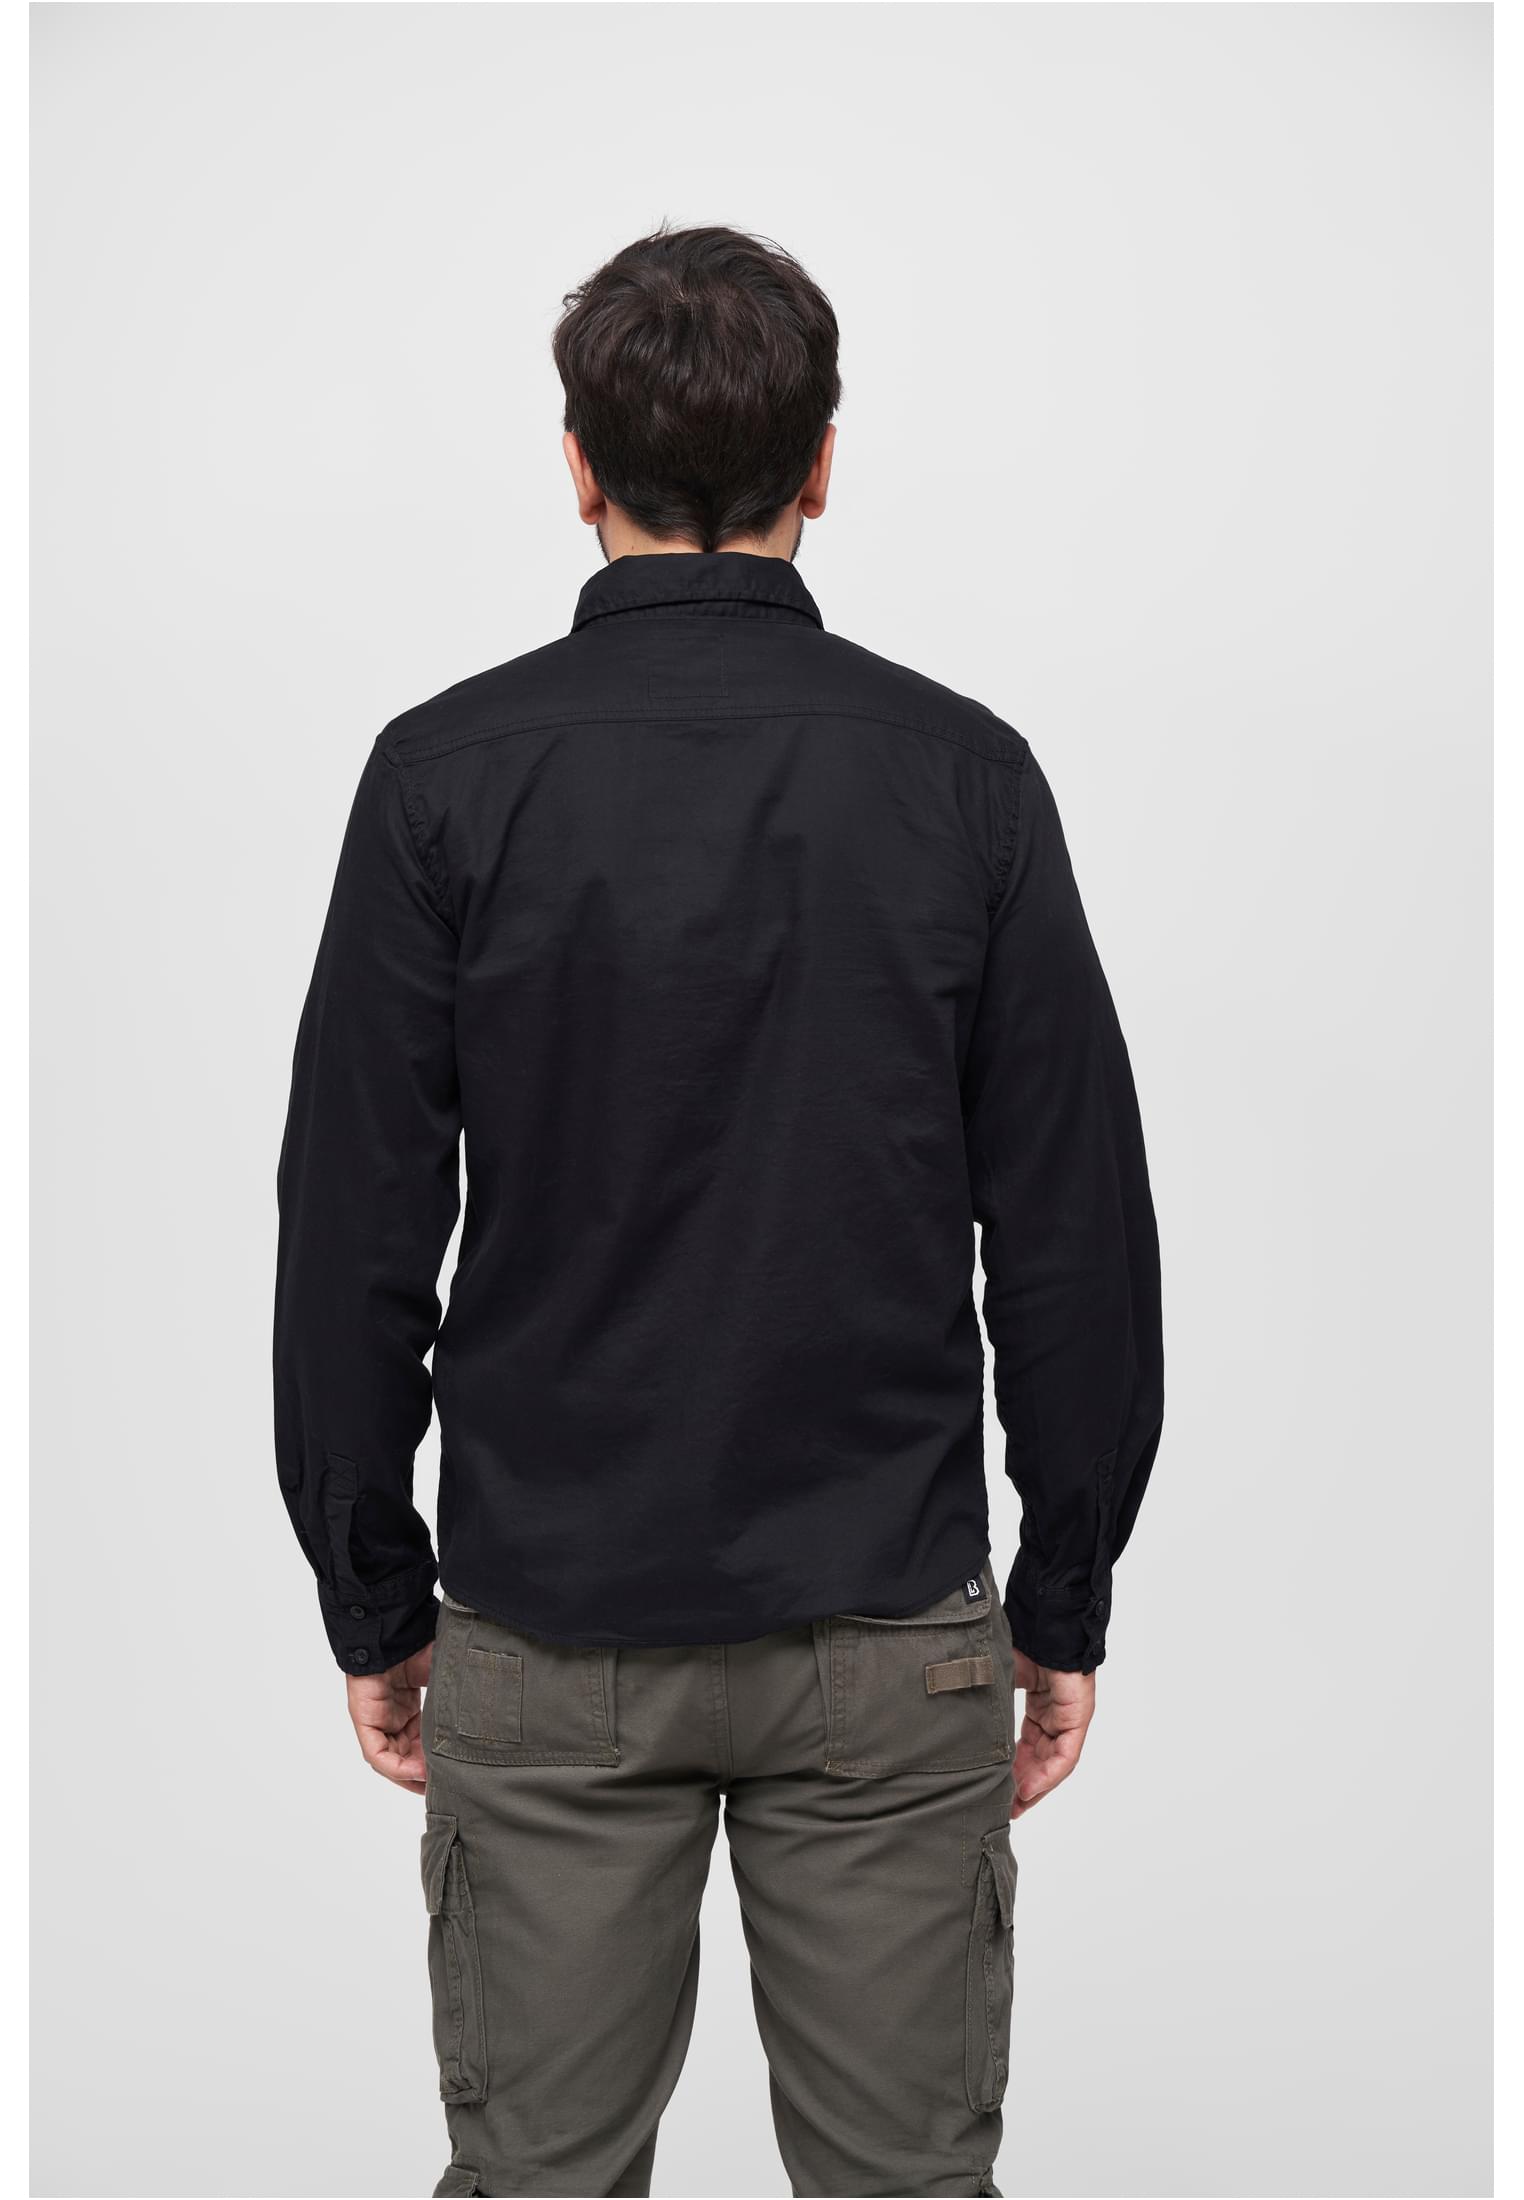 Hemden Flanellshirt in Farbe black